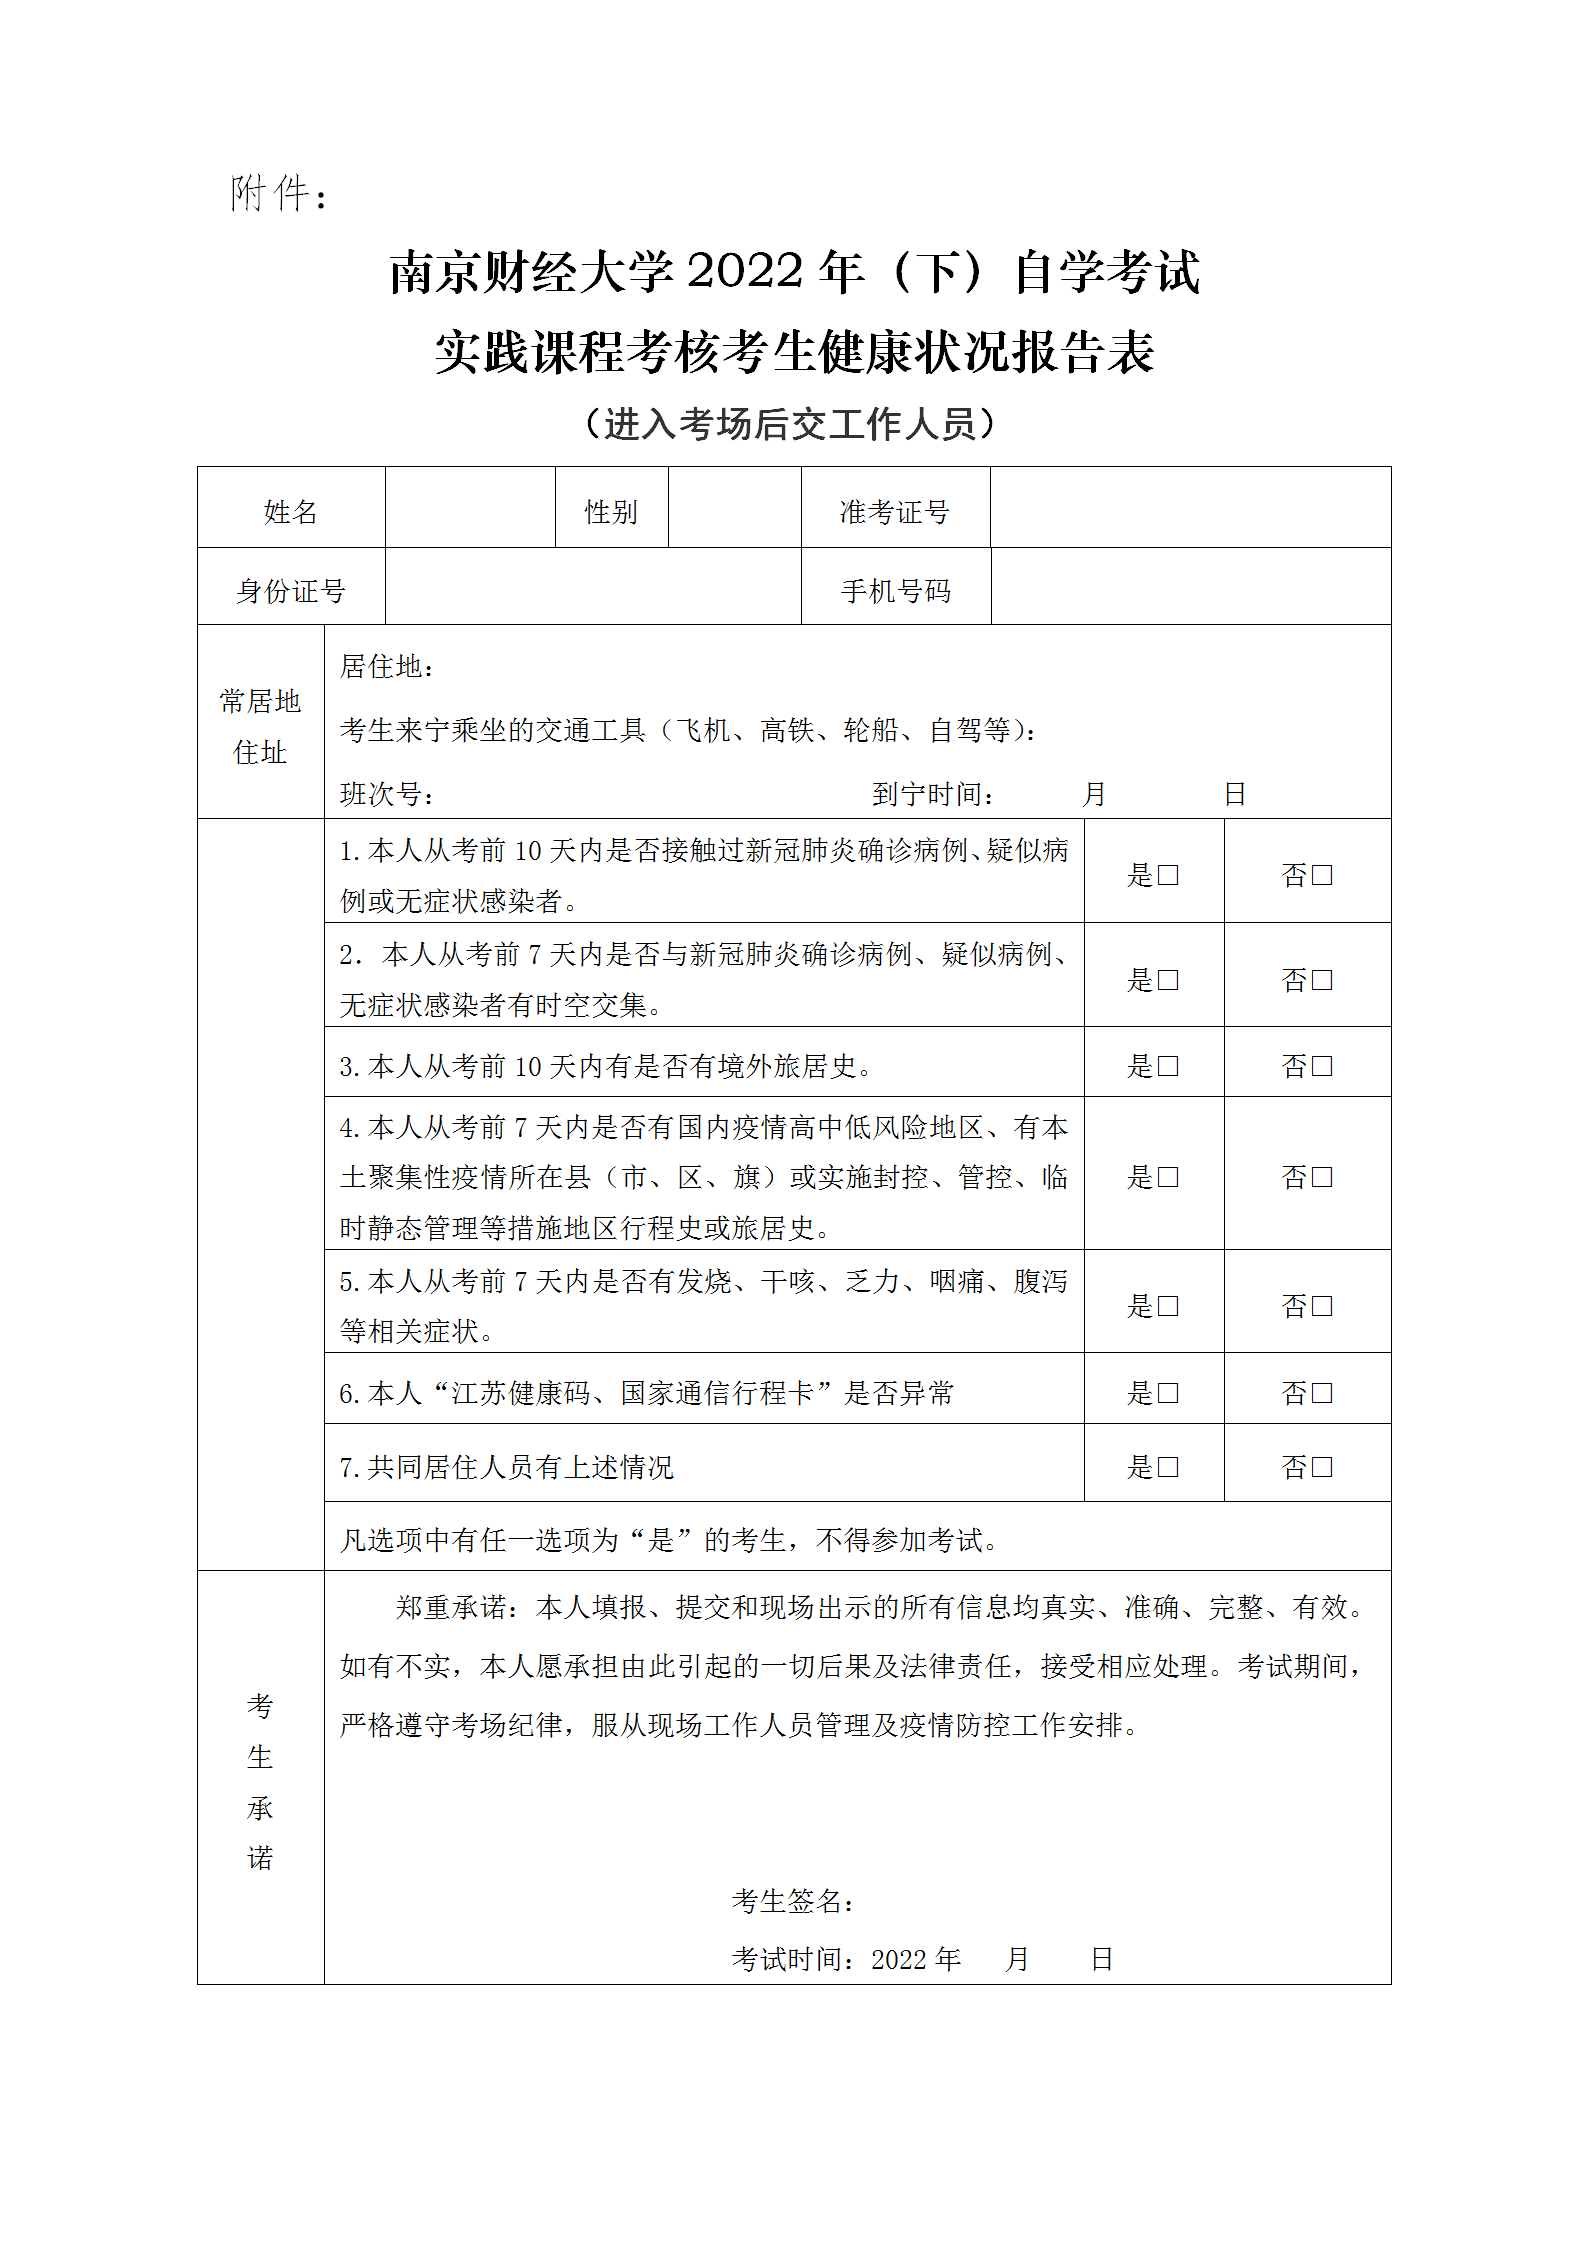 南京财经大学2022年自学考试实践考核疫情防控考生须知_03.png